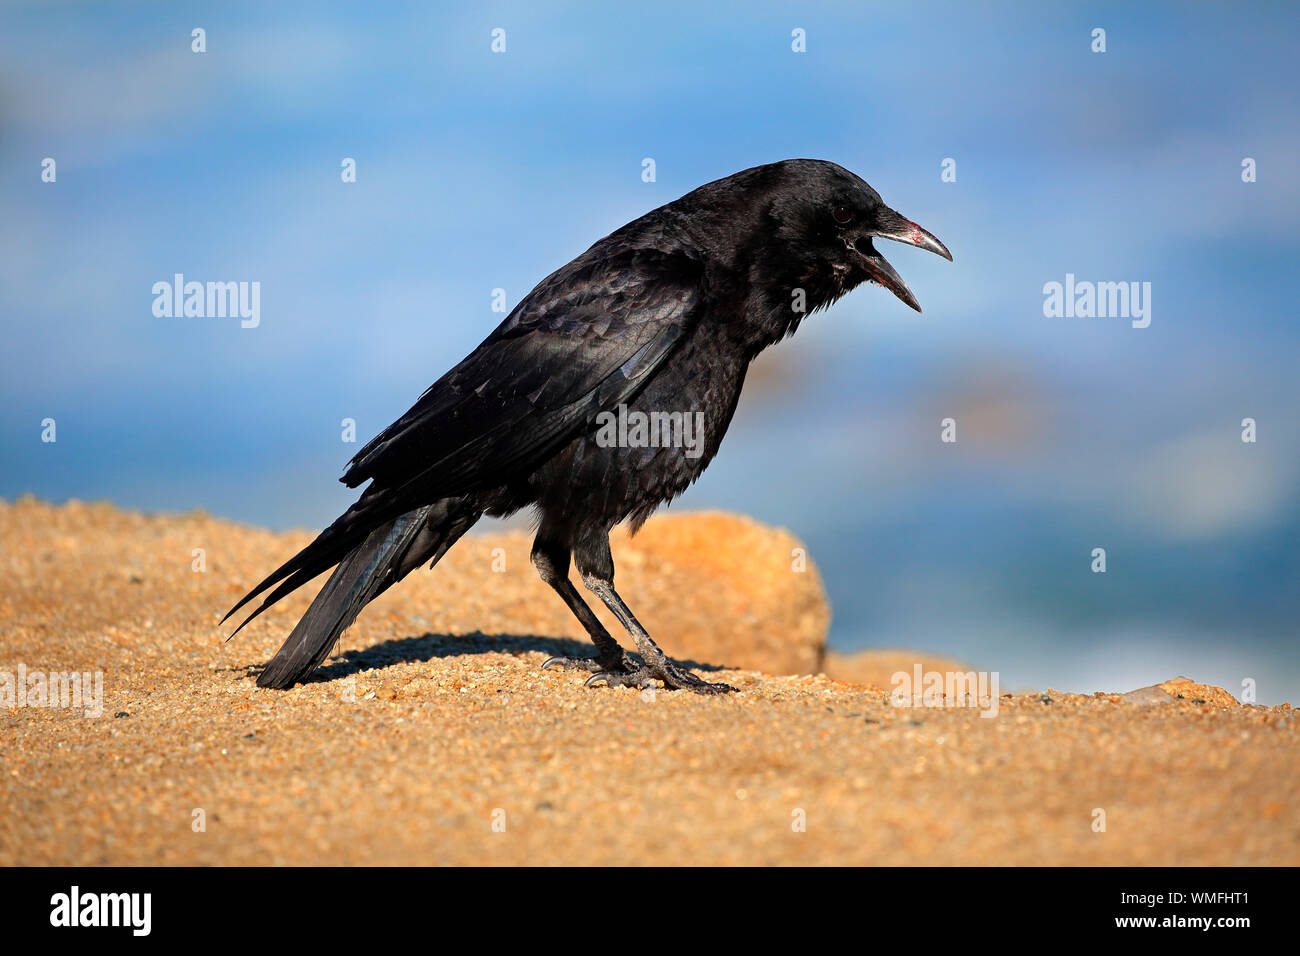 American Crow, Erwachsenen auf dem Rock, Monterey, Kalifornien, Nordamerika, USA, (Corvus brachyrhynchos) Stockfoto